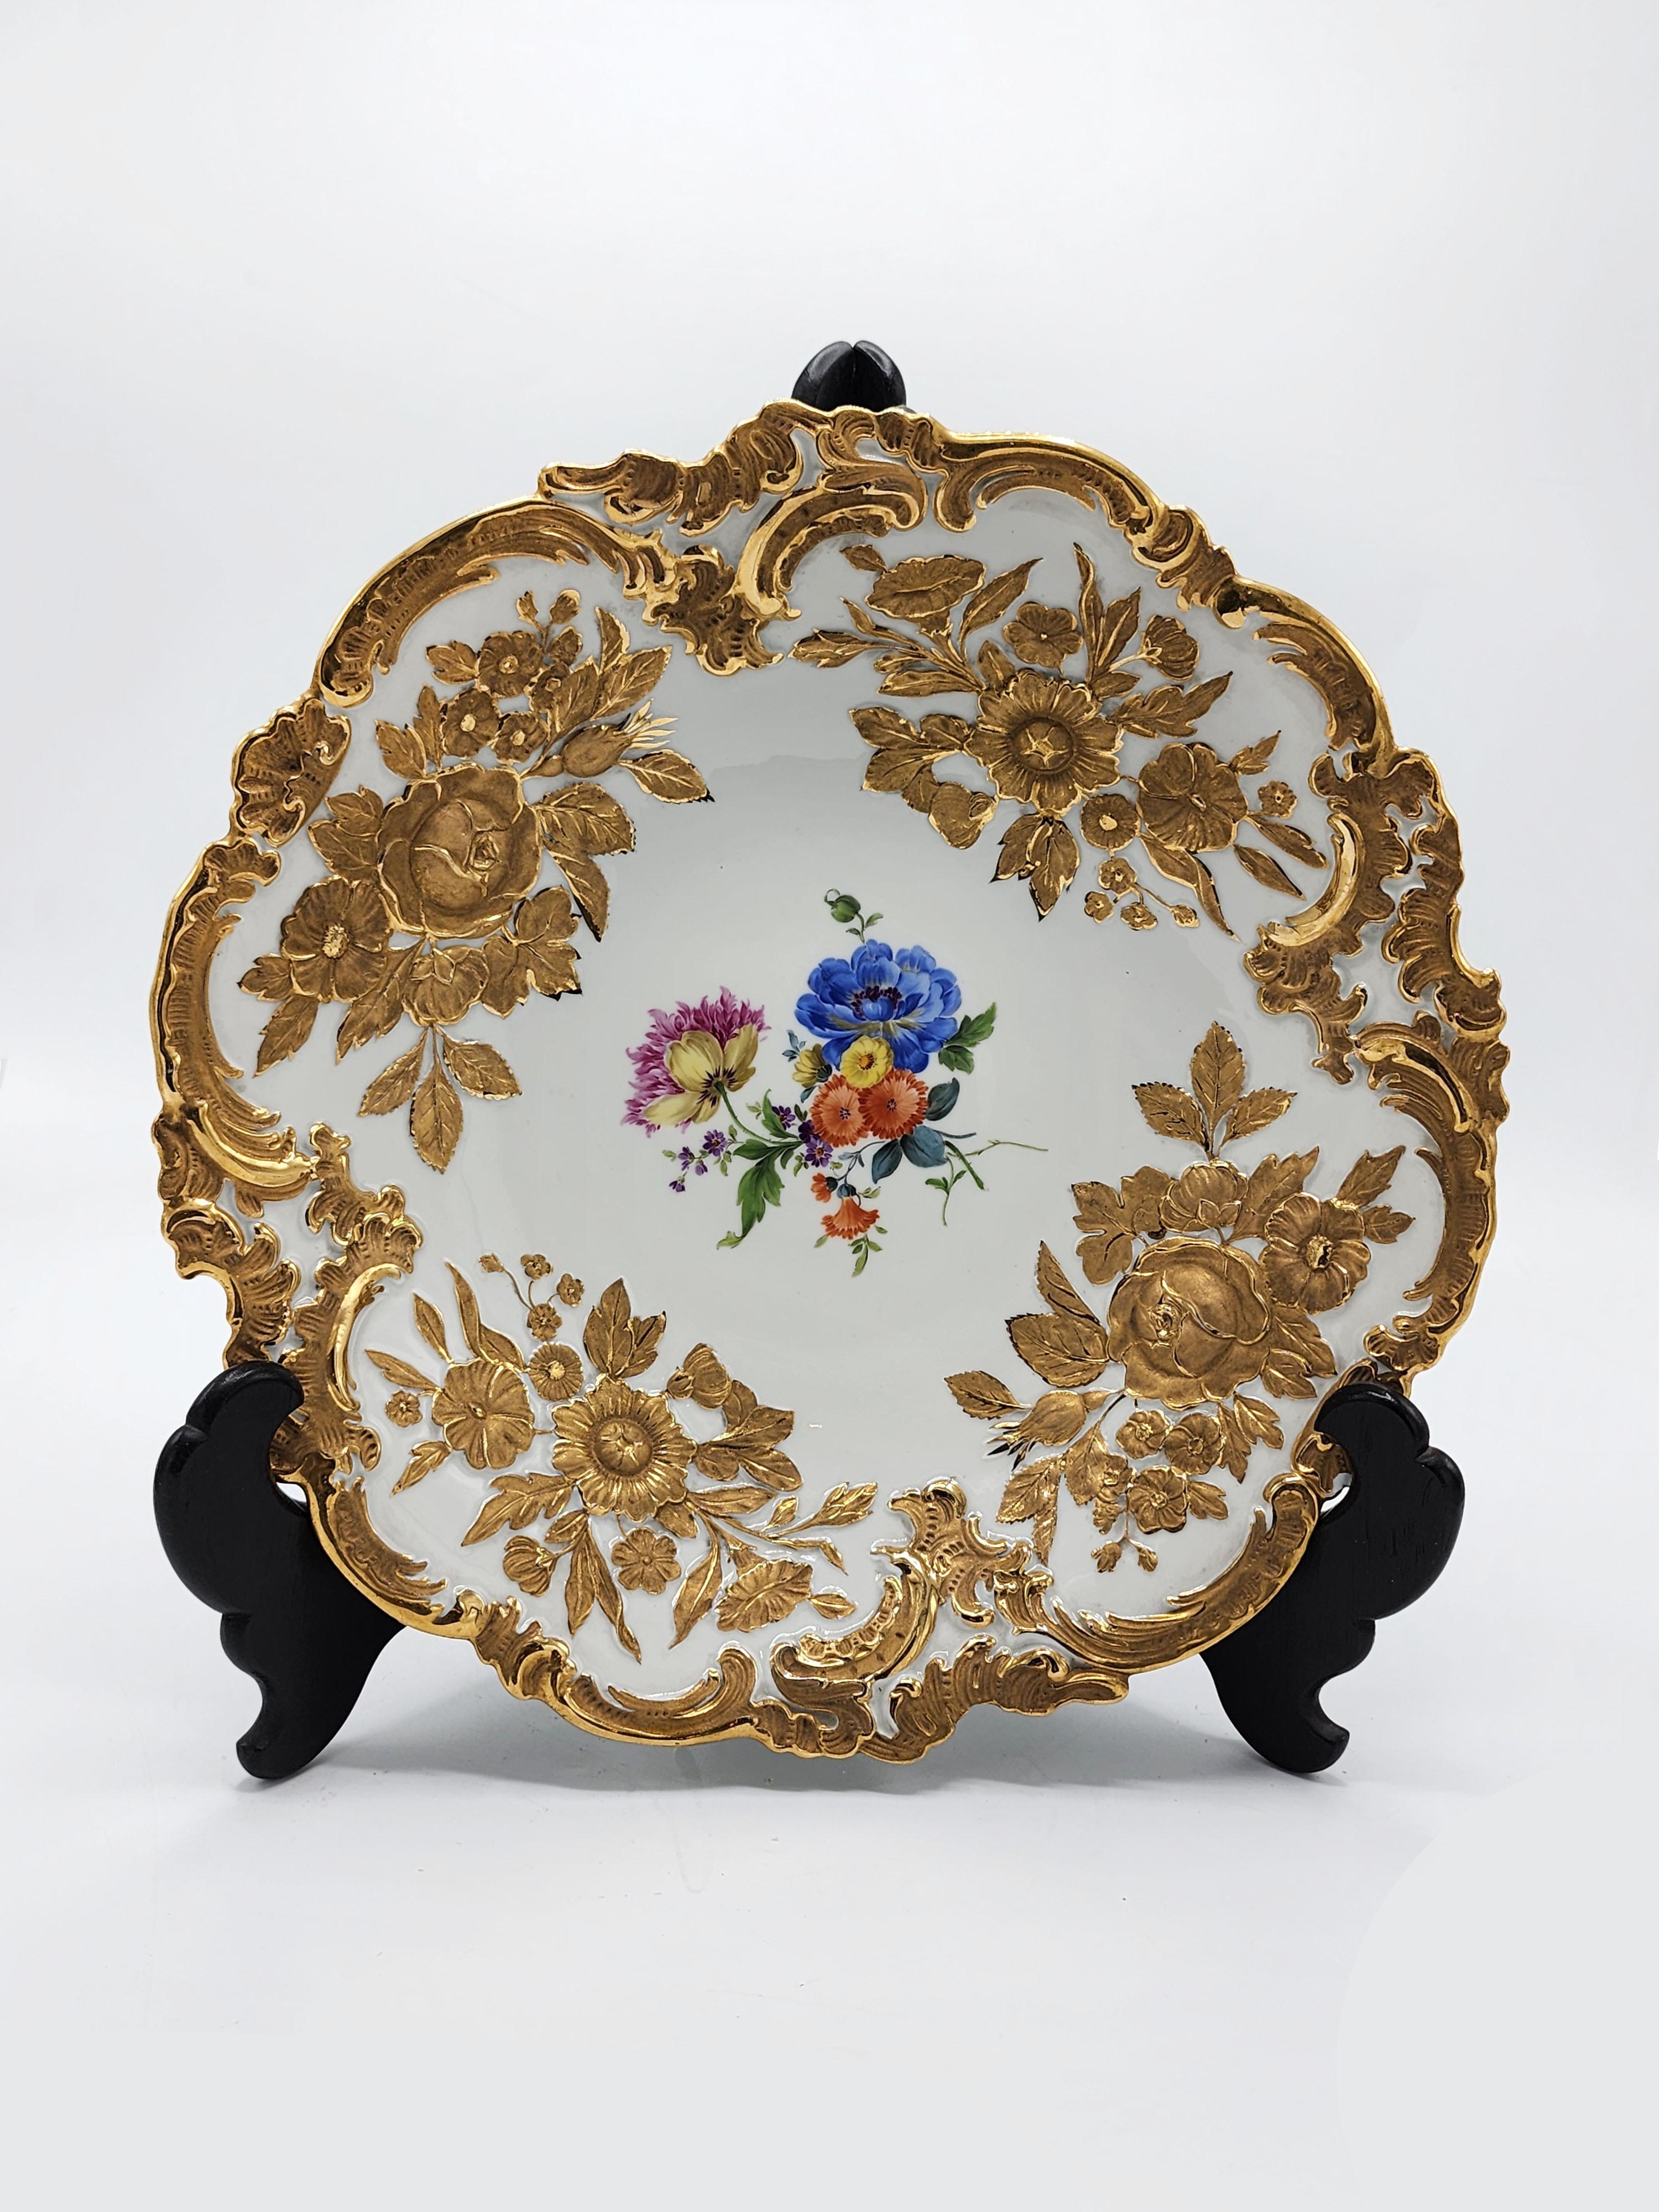 Assiette creuse en porcelaine de Meissen peinte à la main et dorée
Belle assiette creuse en porcelaine de Maissen dont le bord est orné de motifs dorés de fleurs et de feuilles. Au centre, peint à la main, se trouve une illustration de fleurs